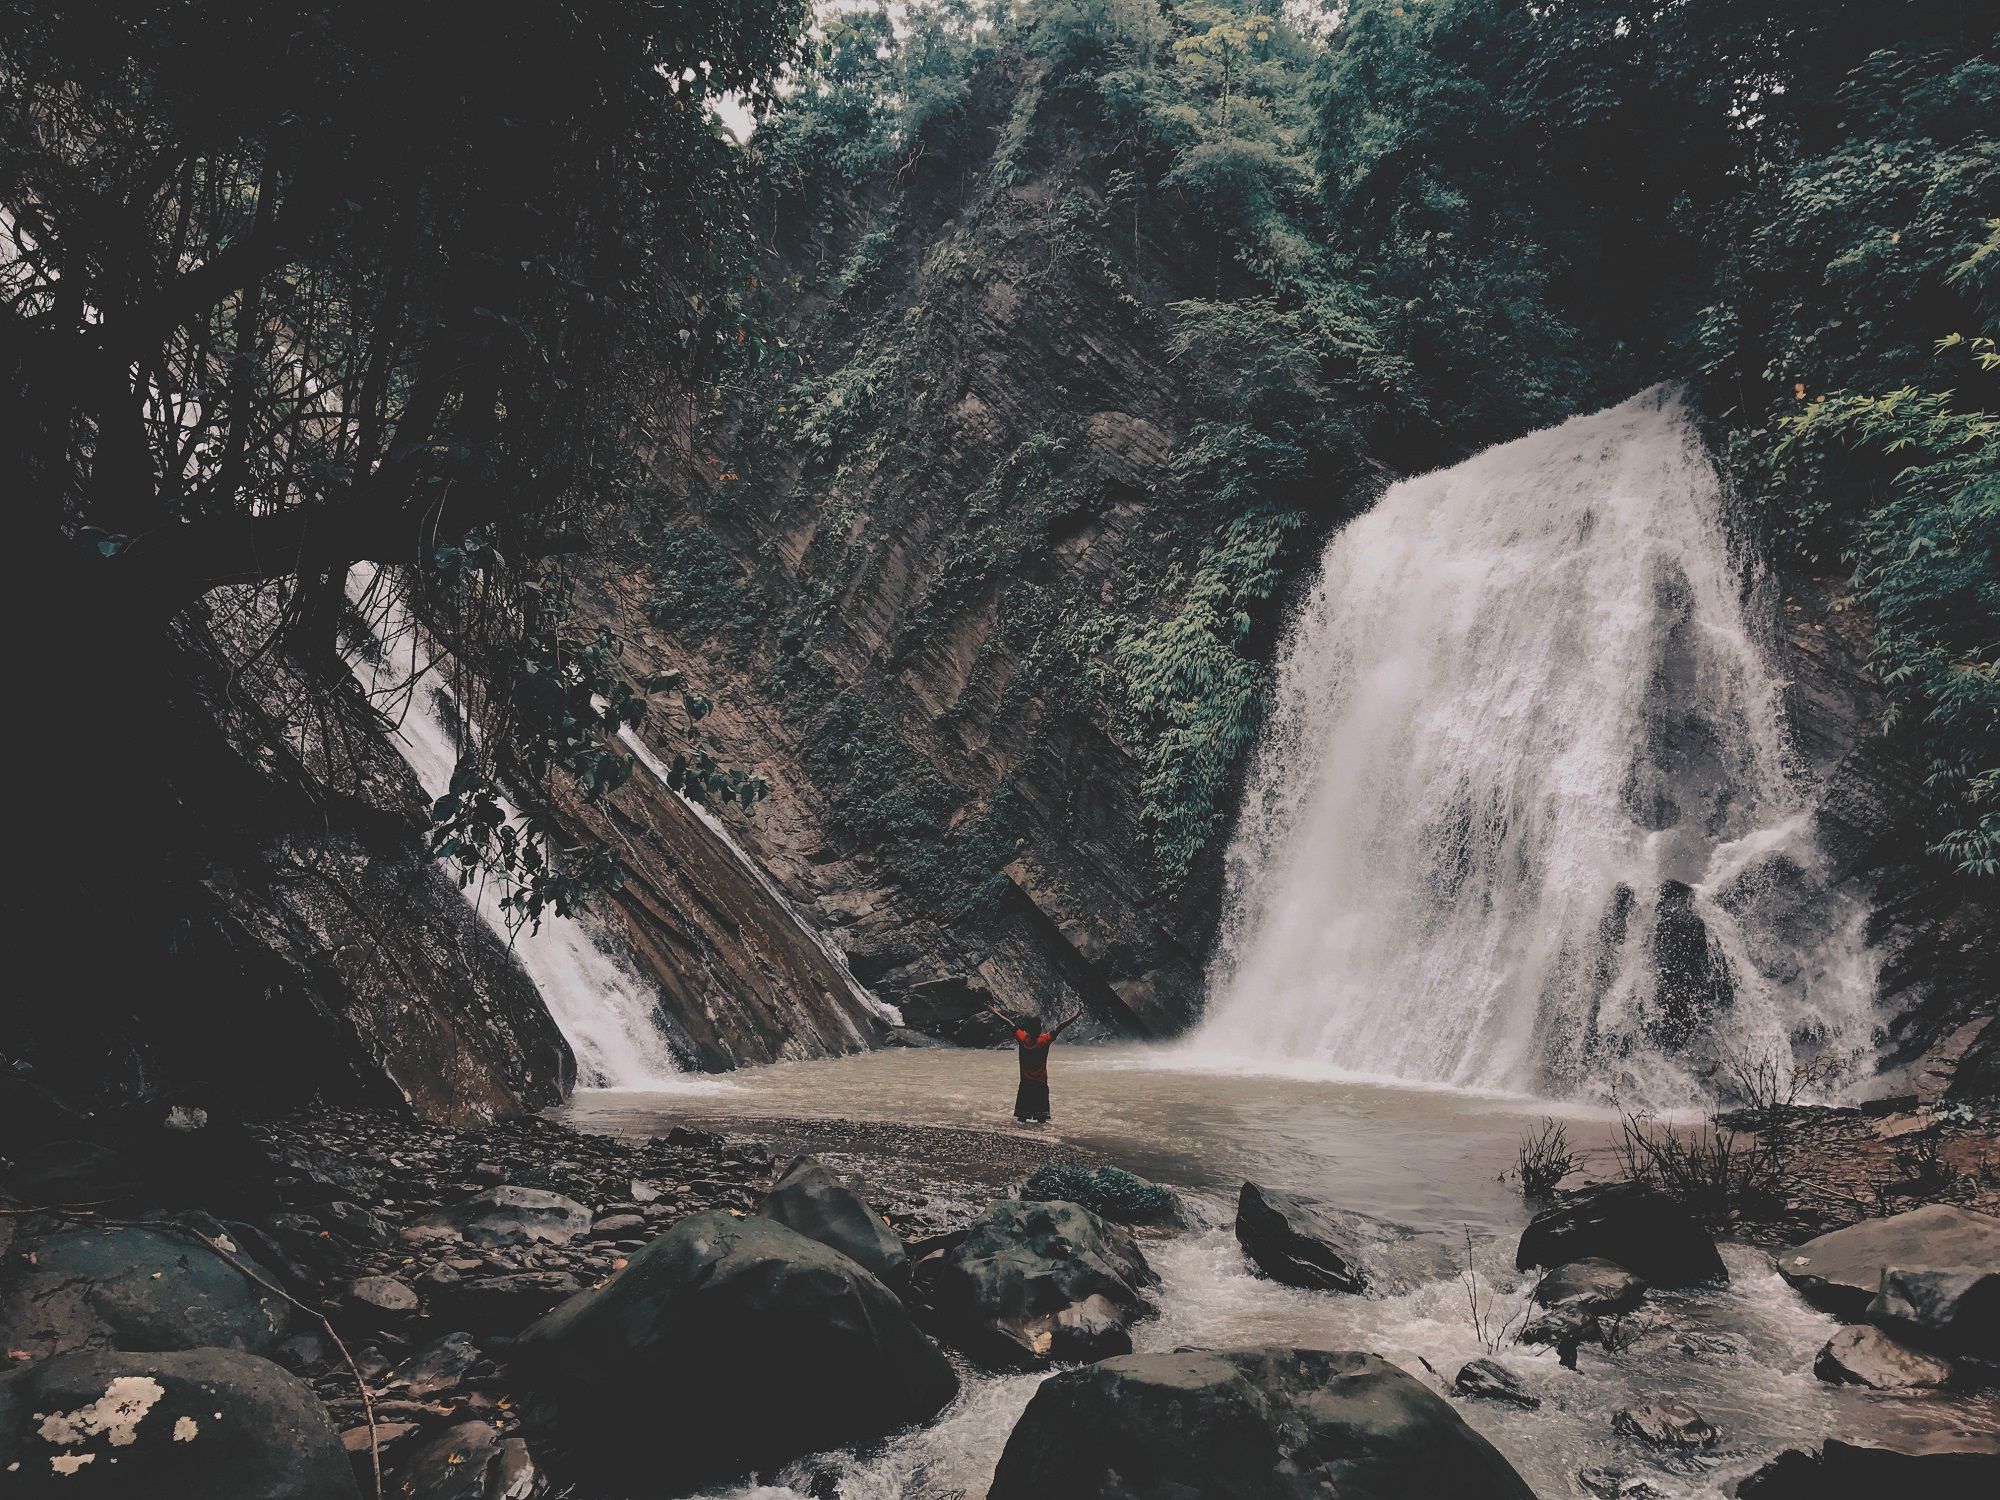 Tukk-O or Damtua Waterfall